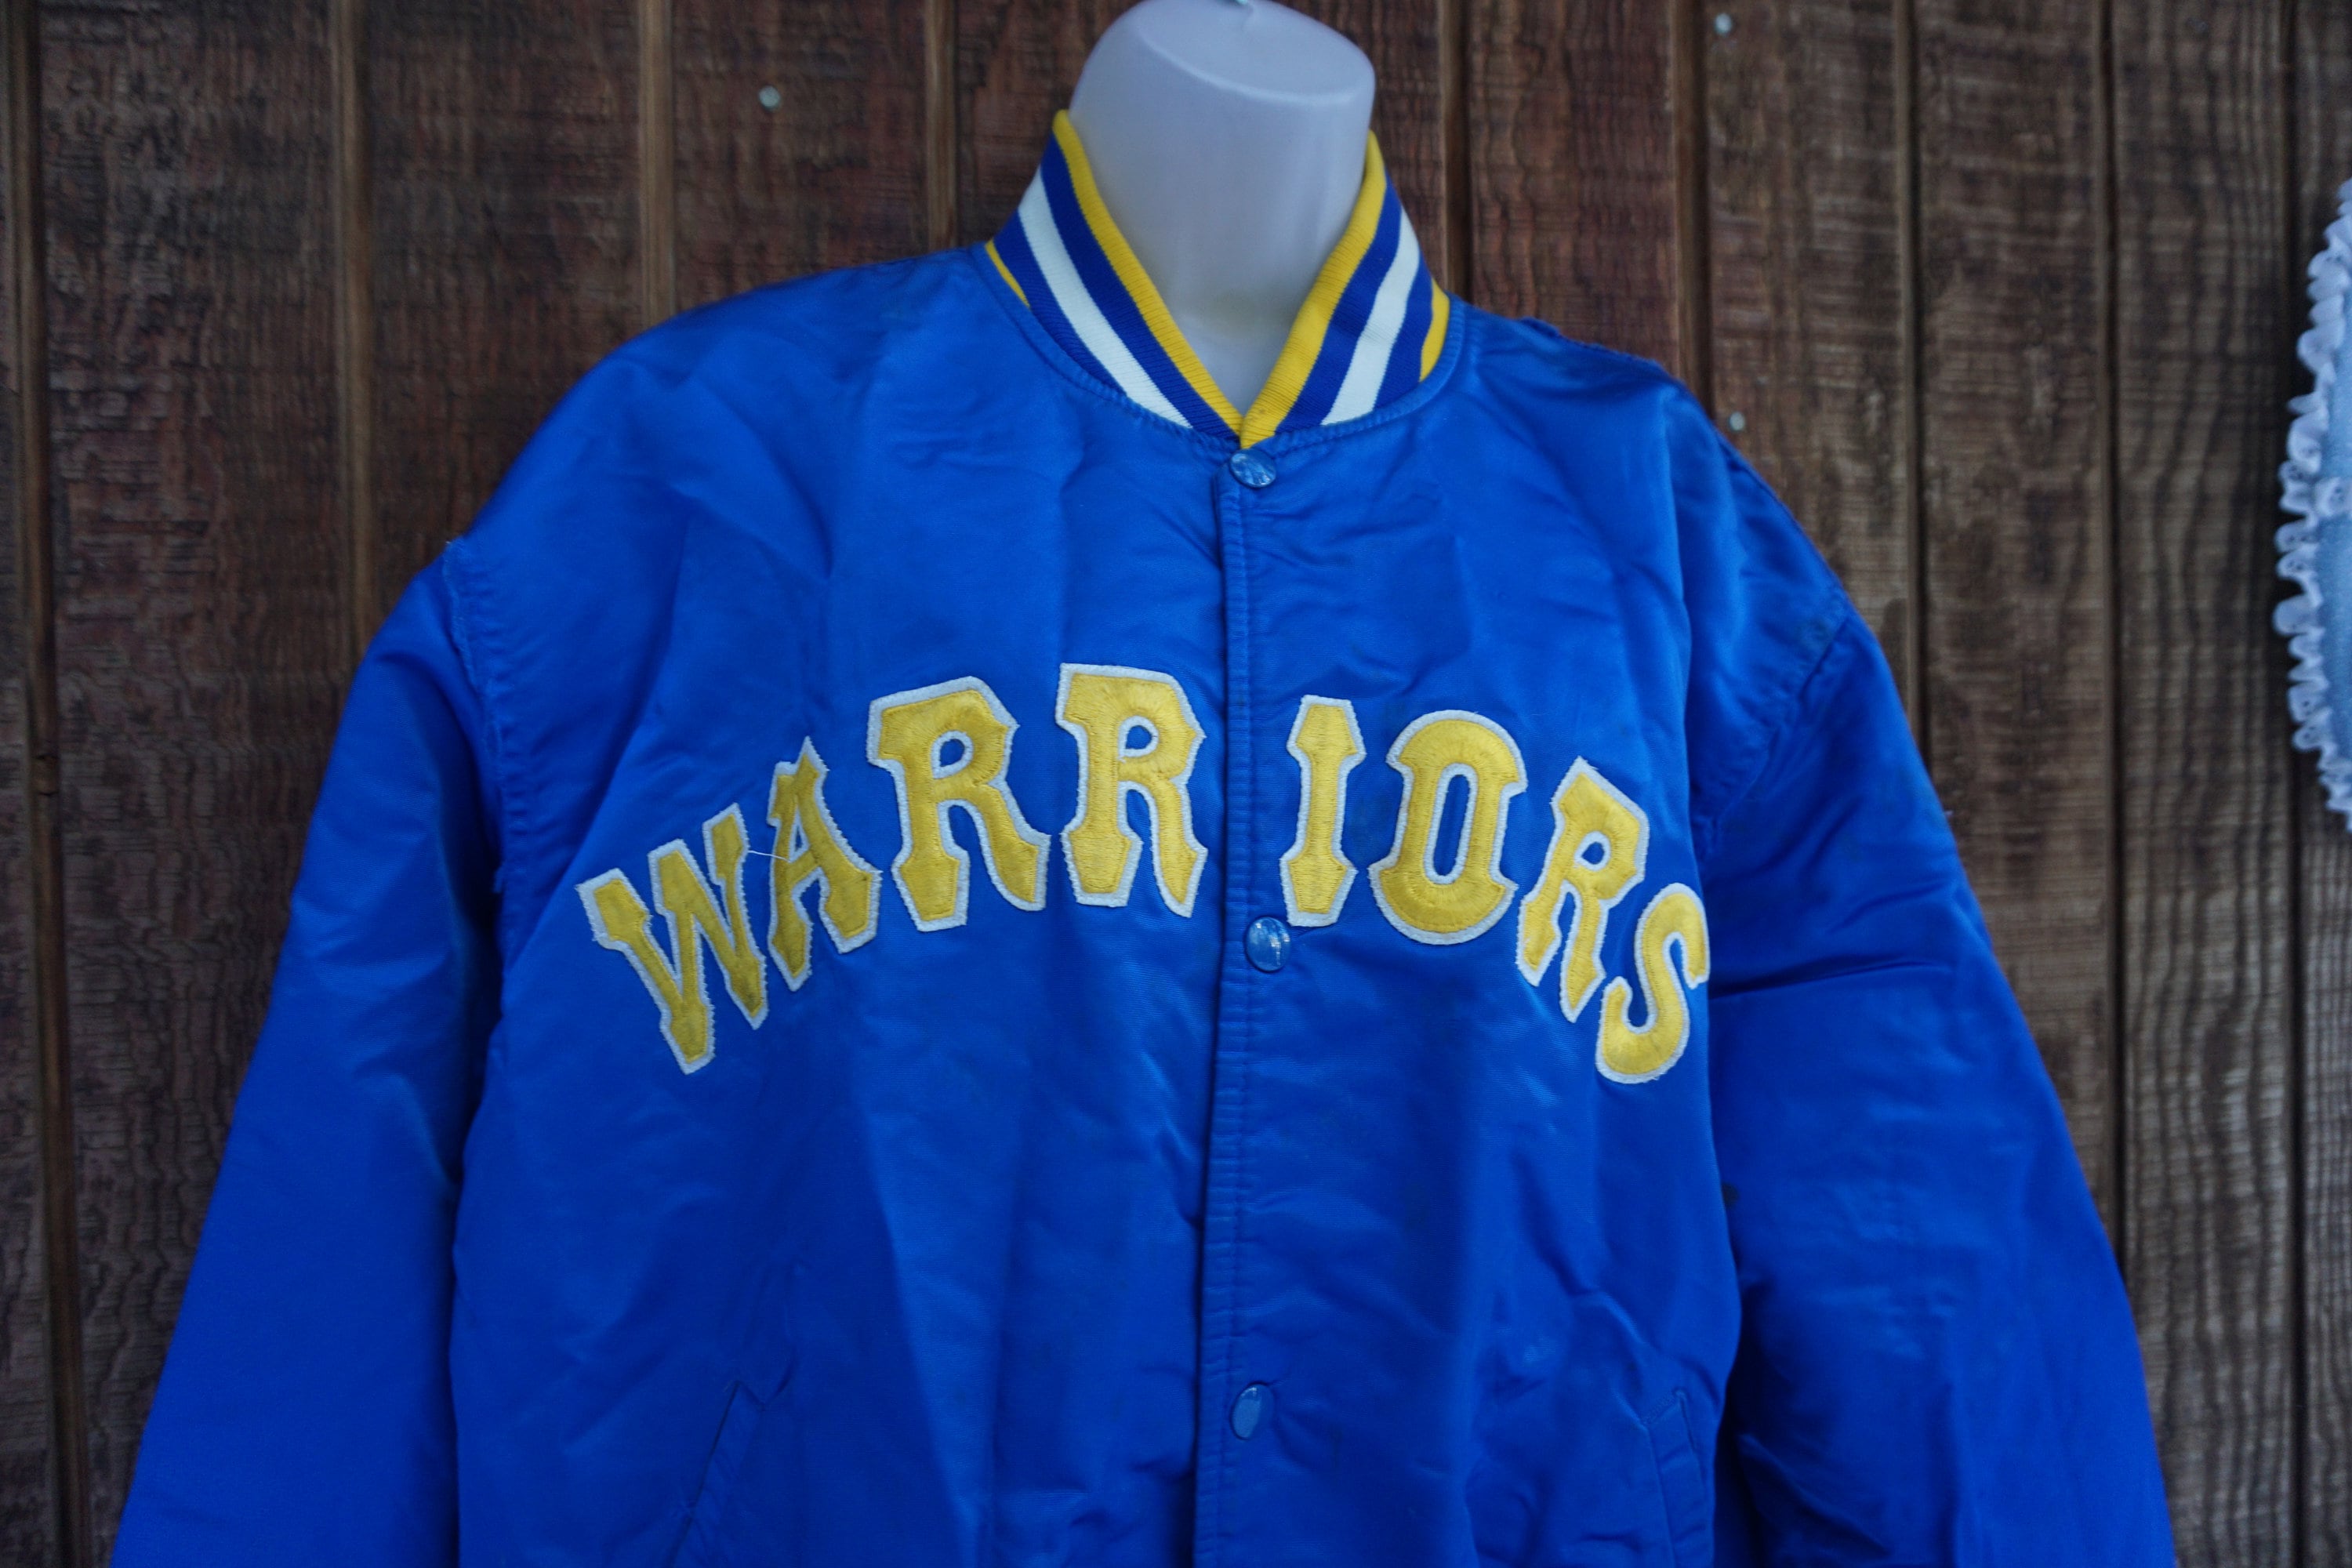  Mitchell & Ness Golden State Warriors Full Zipper Performance Track  Jacket - Navy (Golden State Warriors, Medium) : Sports & Outdoors